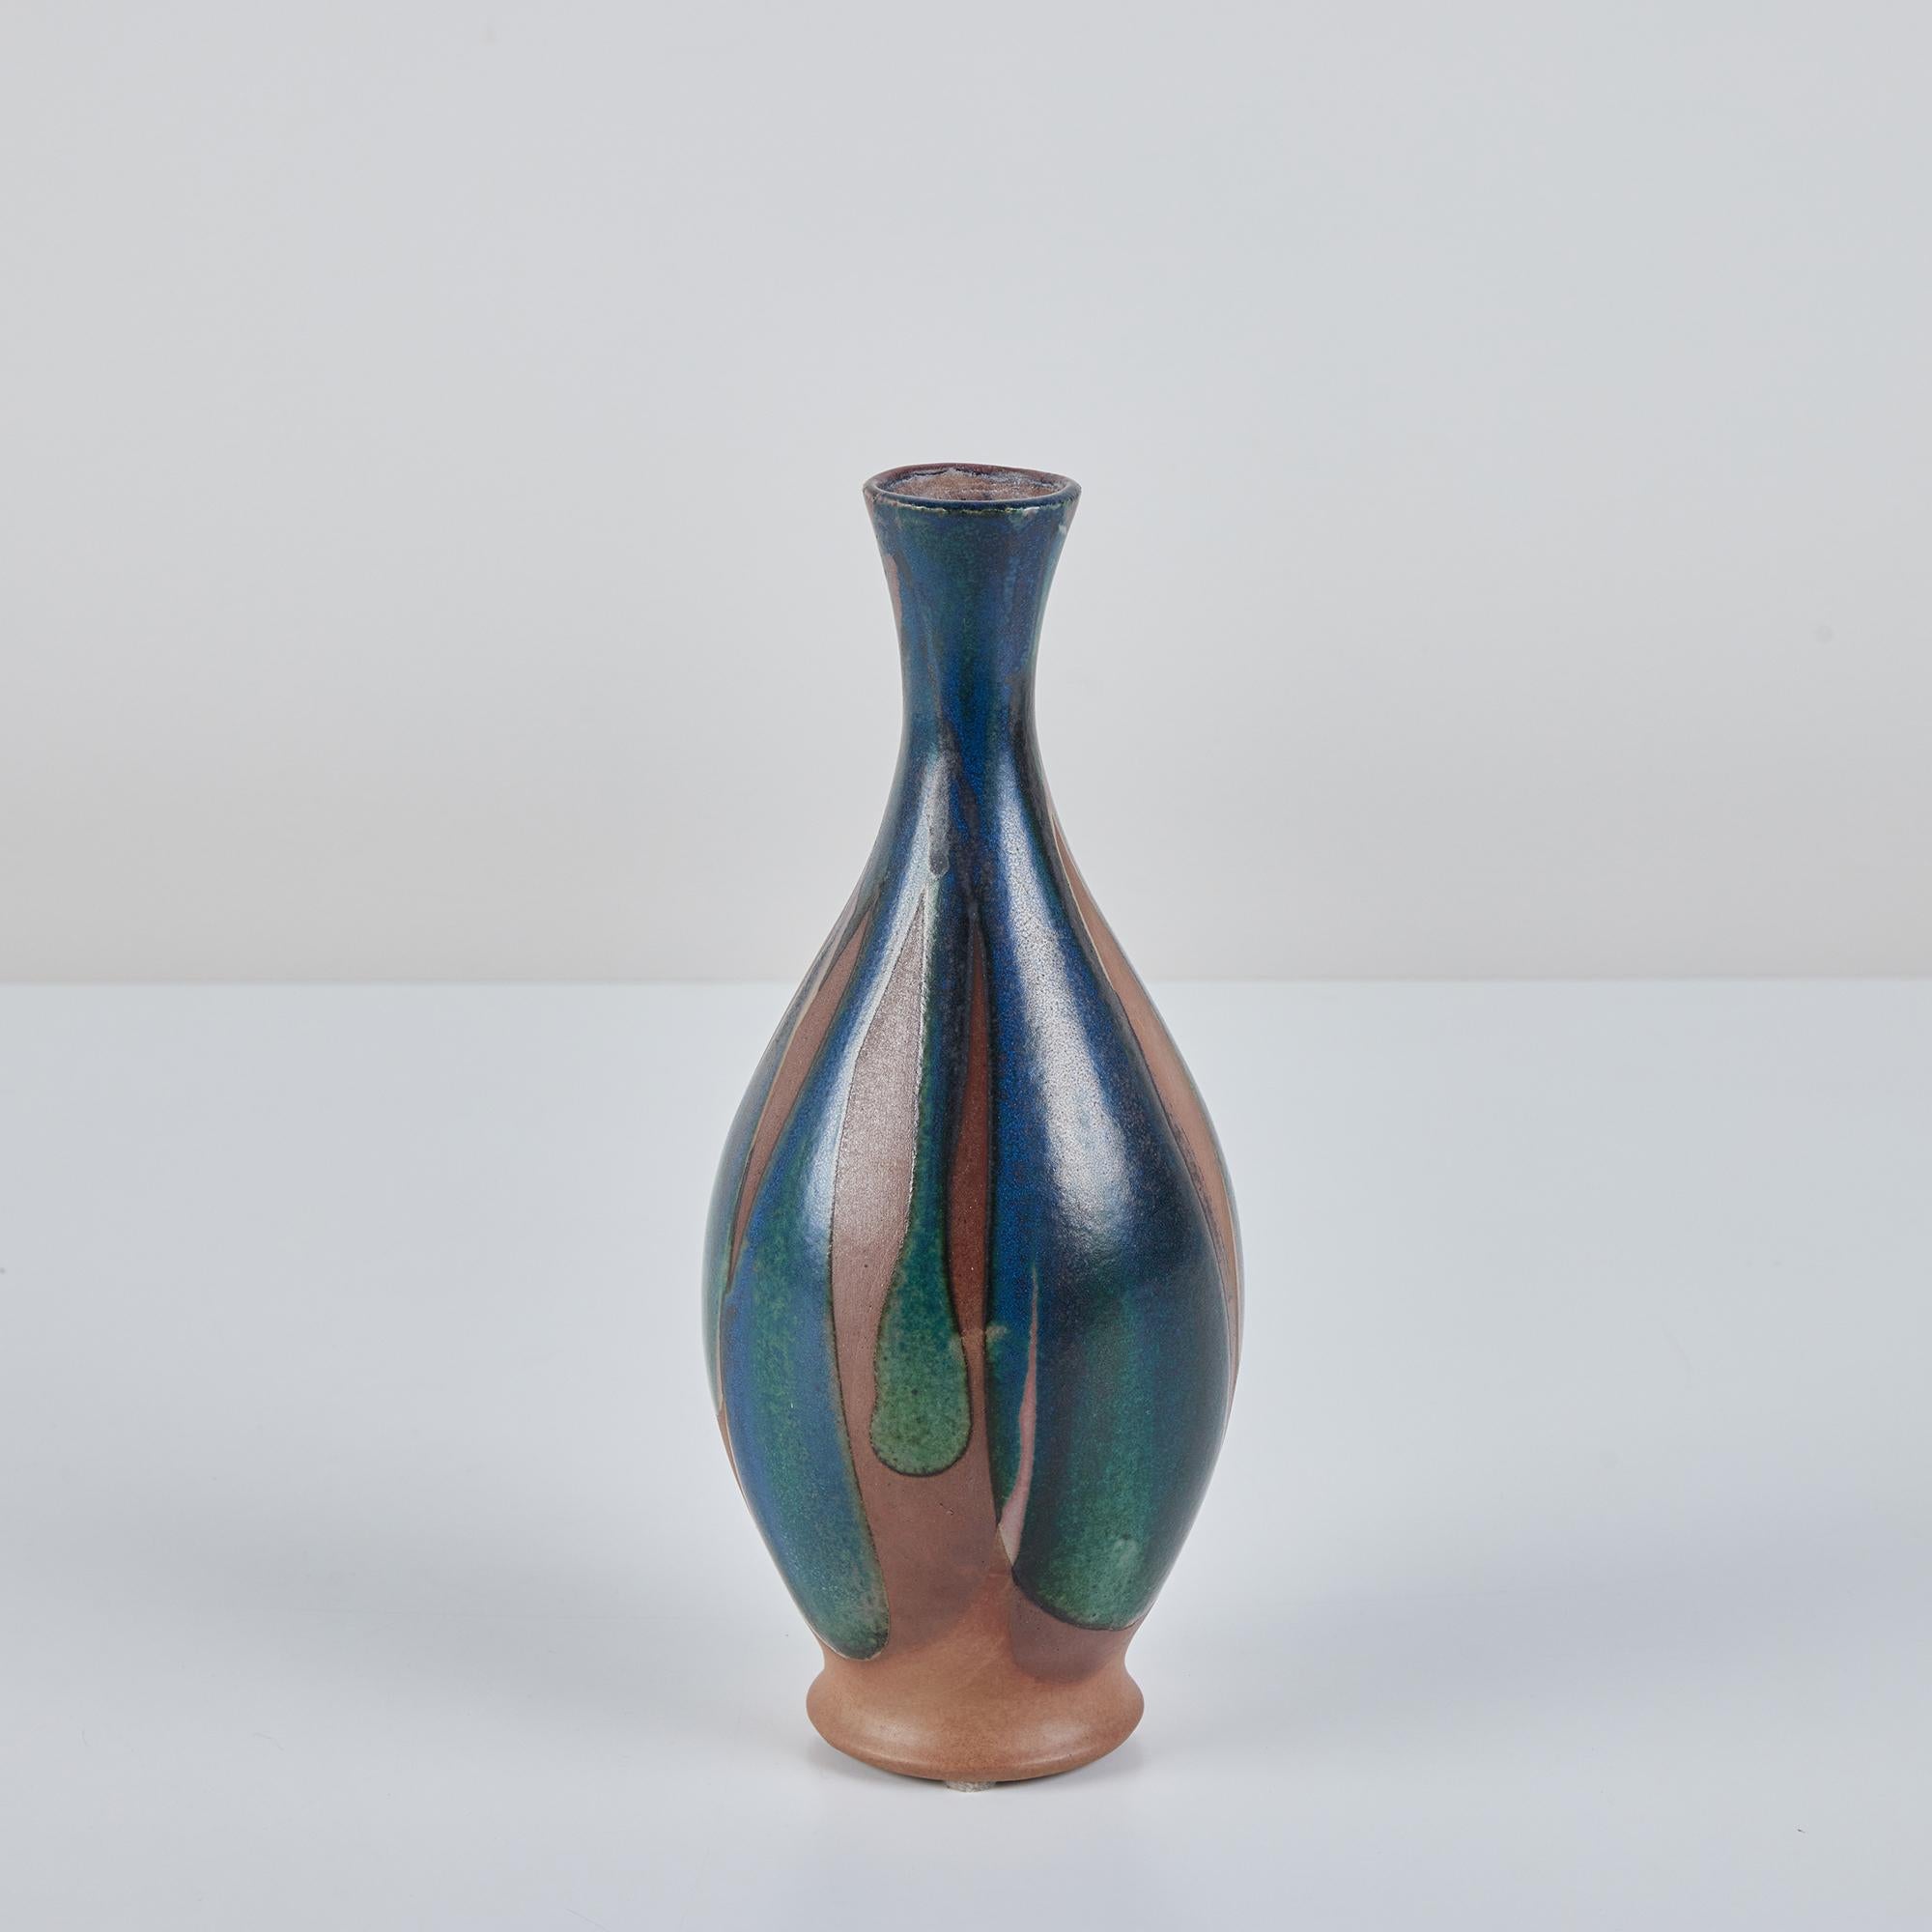 Vase à bourgeons en grès, jeté à la main par le céramiste californien Robert Maxwell. Le vase est recouvert d'une glaçure bleu-vert en goutte d'eau sur un récipient en grès brun chaud.
Labellisé - Robert Maxwell Stoneware Handcrafted